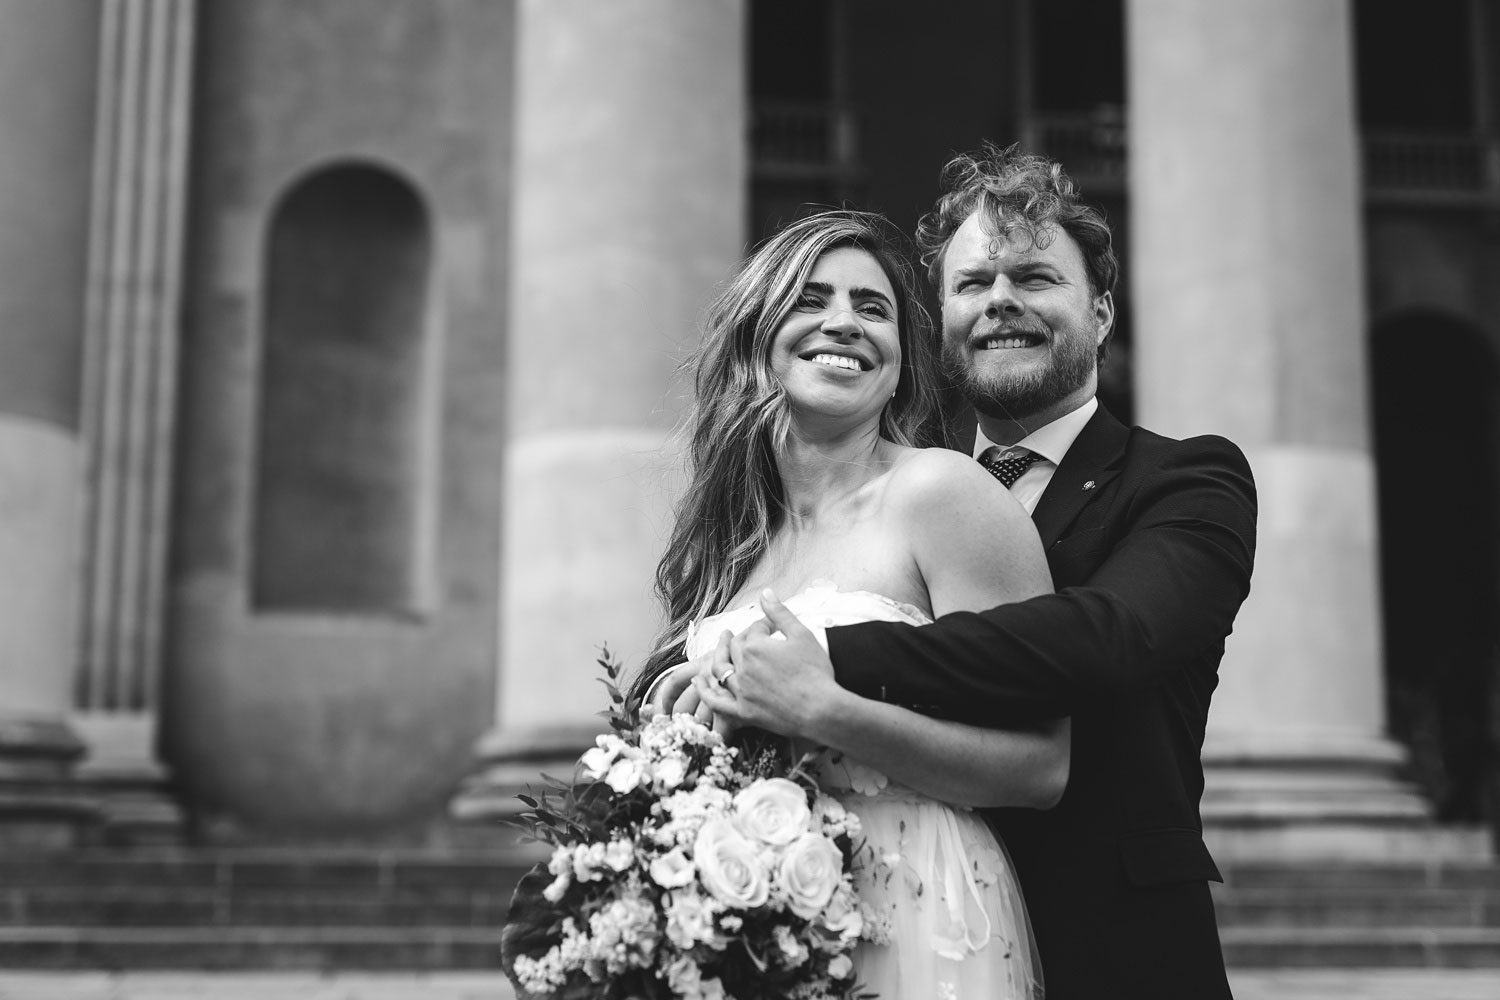 Copenhagen Wedding Photography - Romantic Couple Pose